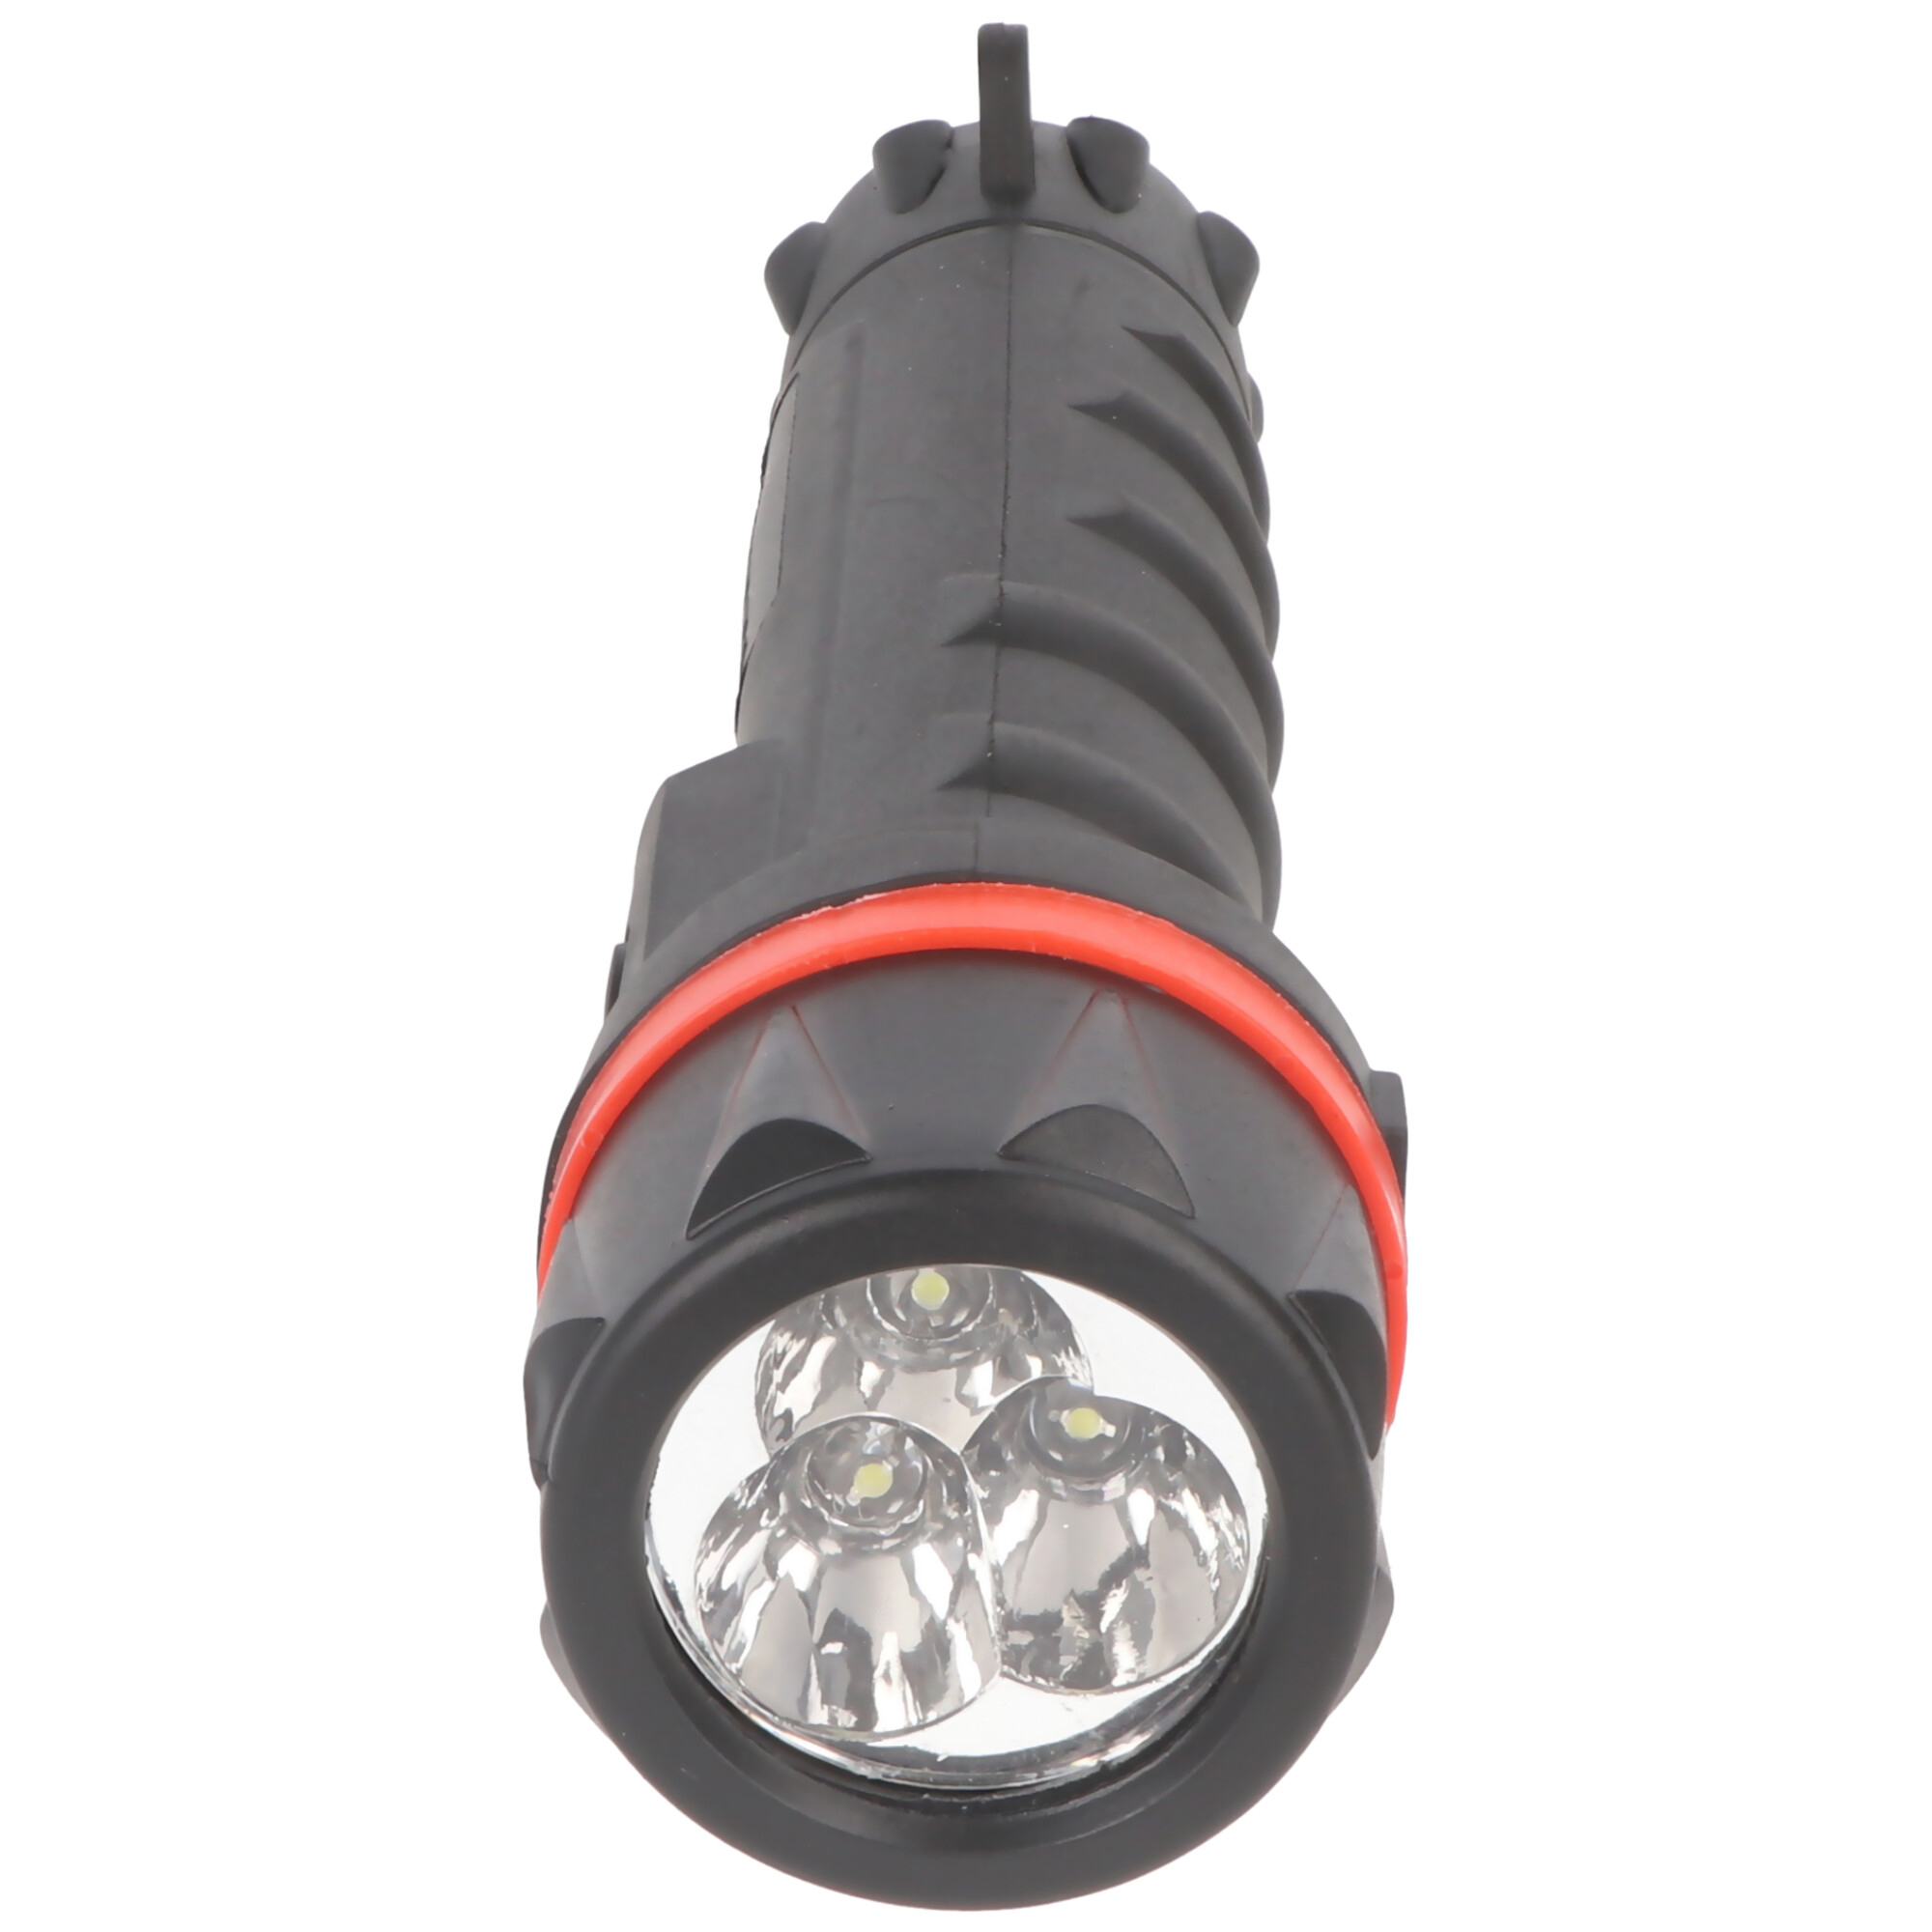 Velamp LED Gummi-Taschenlampe, 3 LEDs, wasserdicht, mit Tragesenkel, Lieferung ohne Batterien